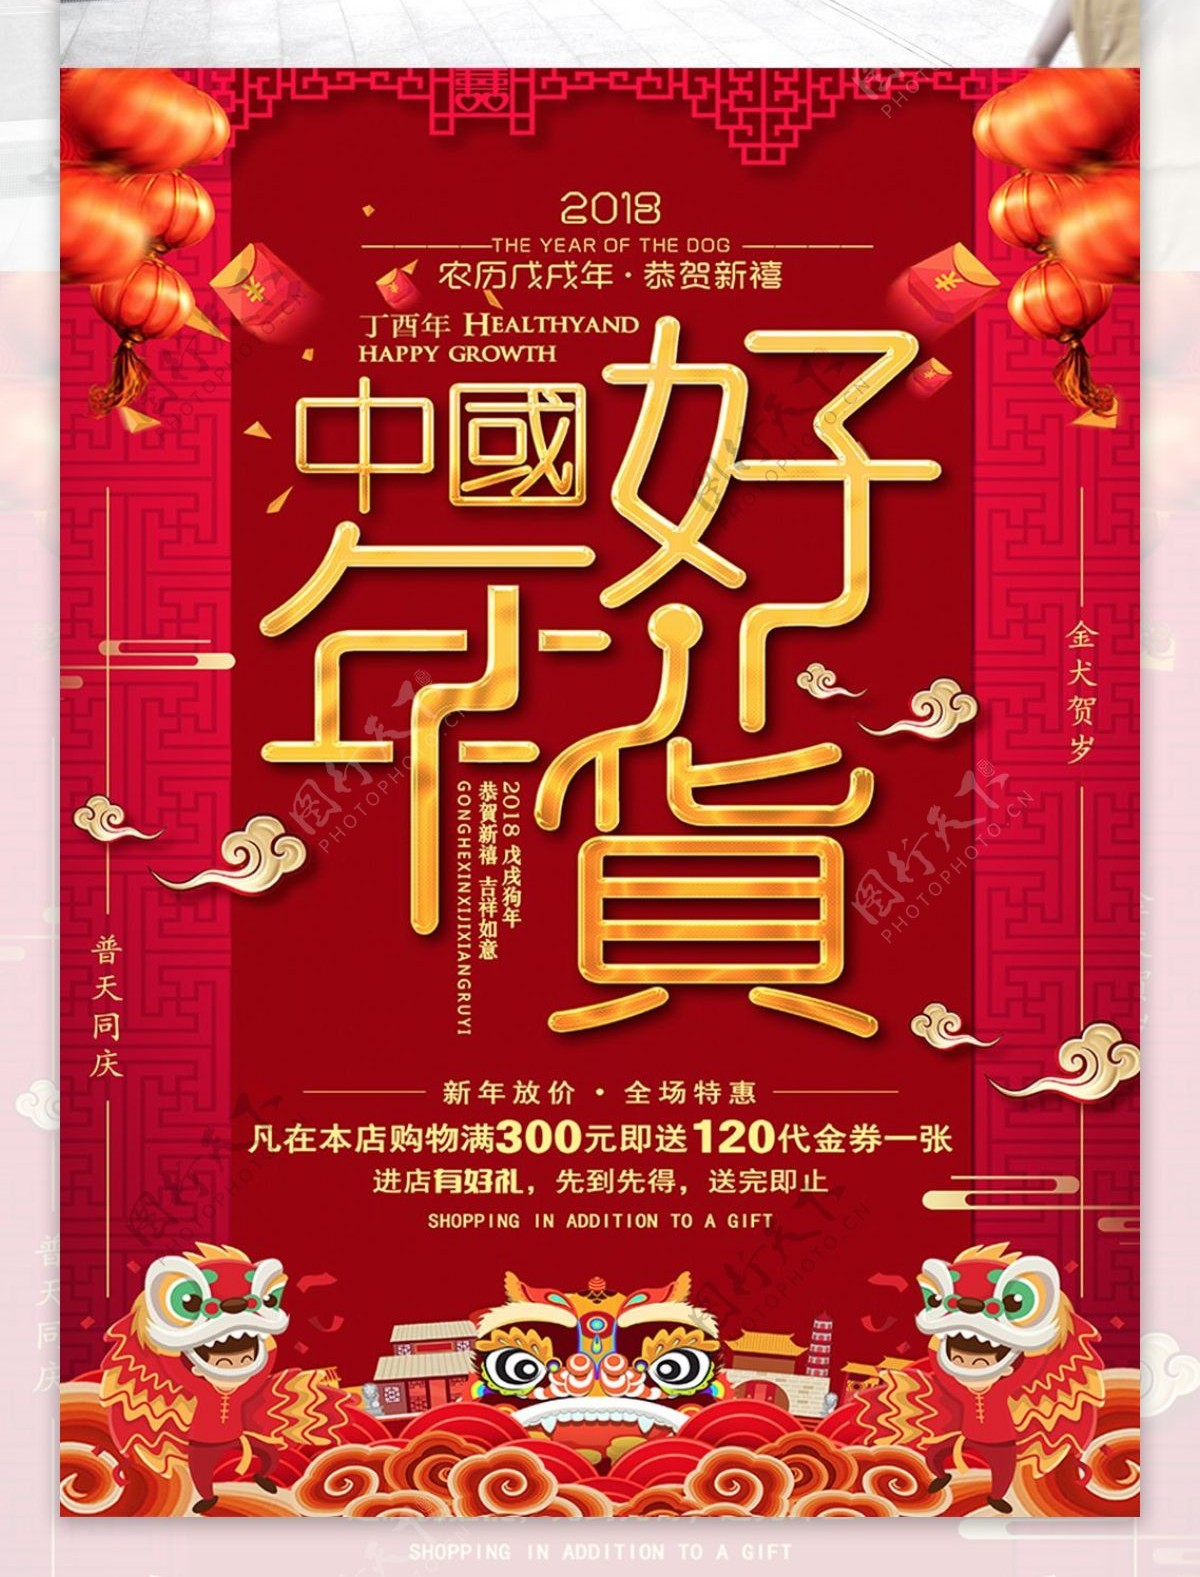 大气红色中国好年货海报设计